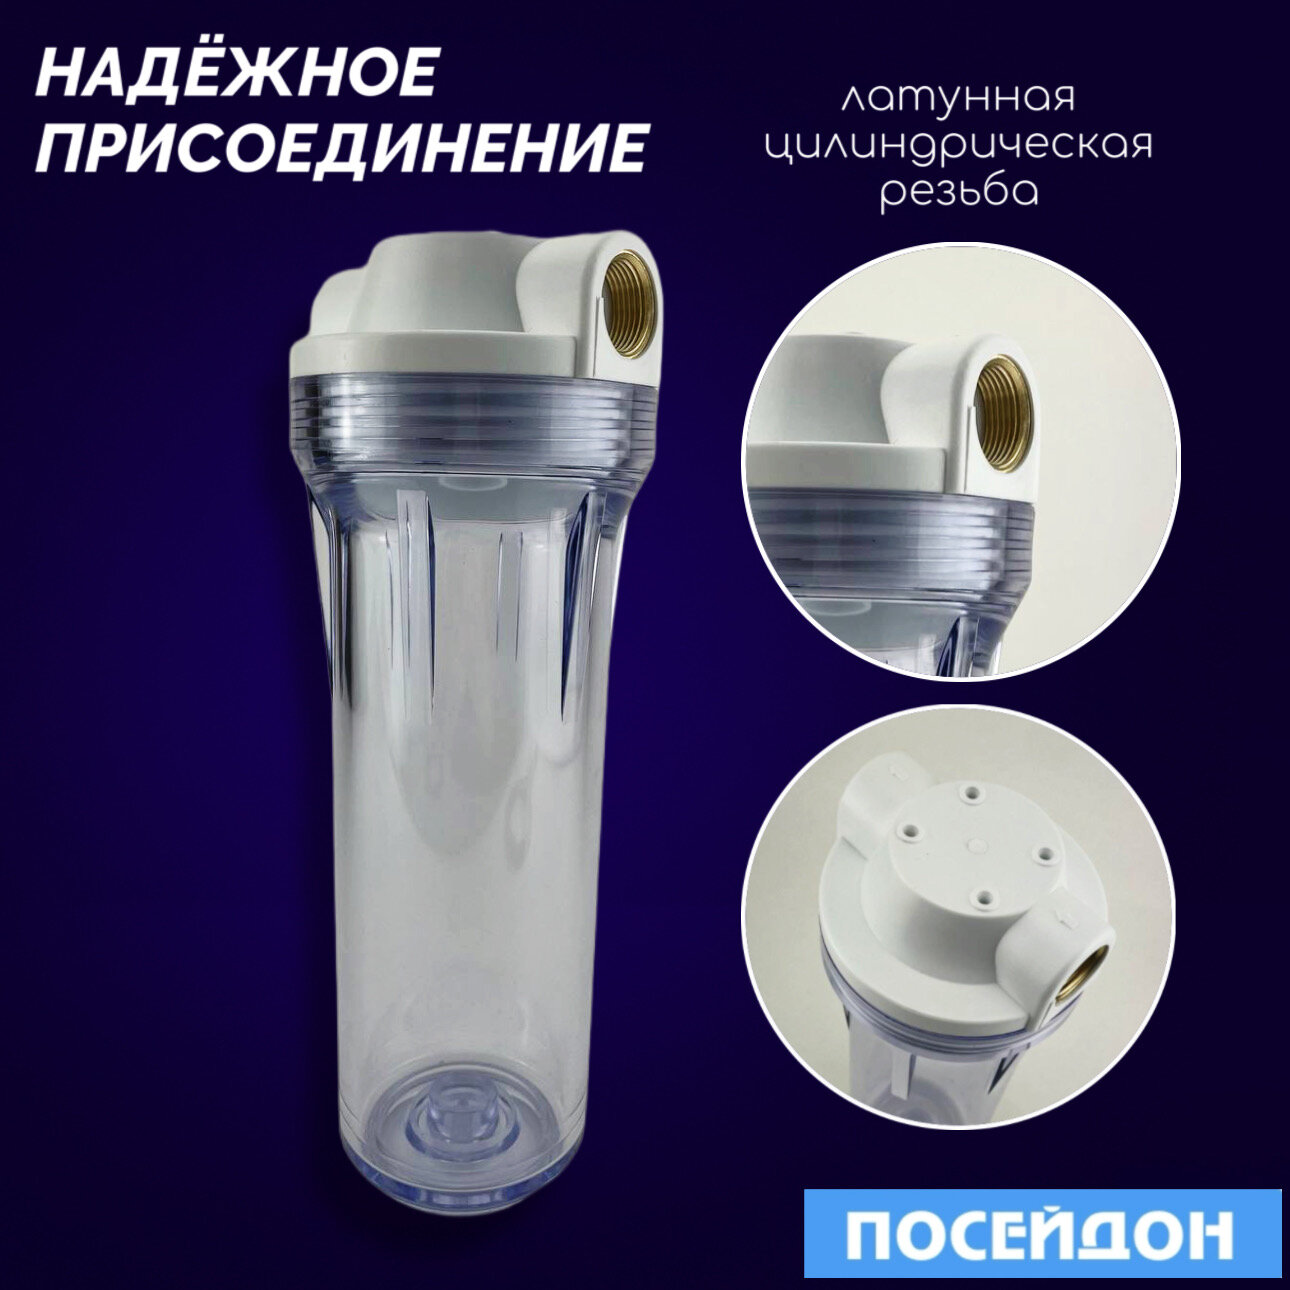 Фильтр магистральный посейдон "ПОСЕЙДОН-1Р" прозрачный 3/4" с ЭФГ 63/250 - 5 мкм. Магистральный фильтр очищает воду во всем доме.